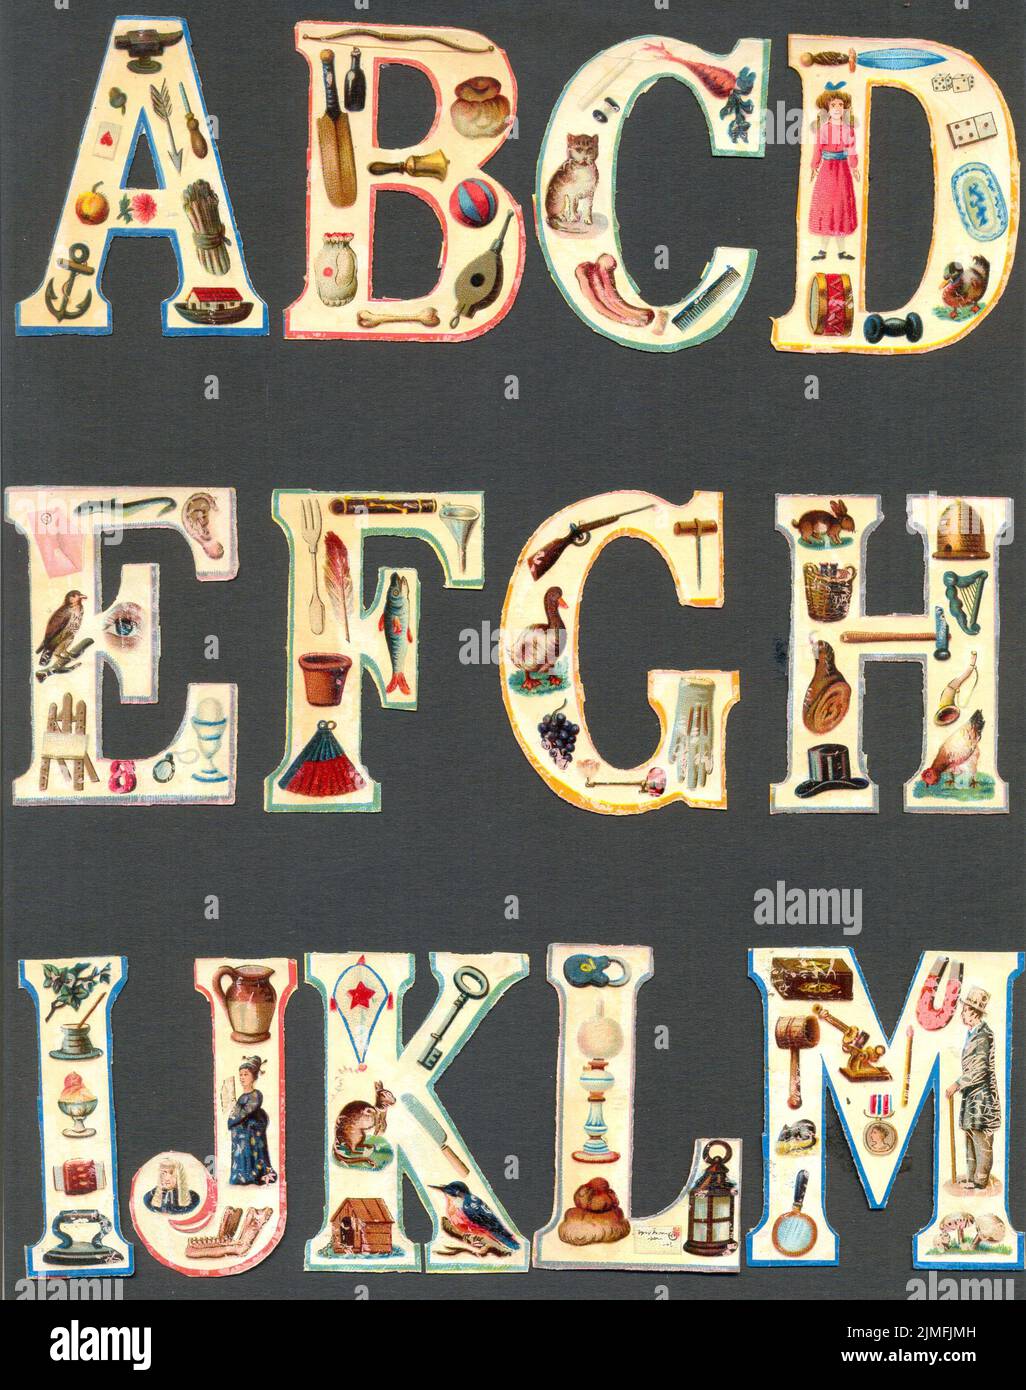 Ritagli di fusto cromatografati alfabetici per lettere Da A a M come ausili didattici circa 1885 Foto Stock